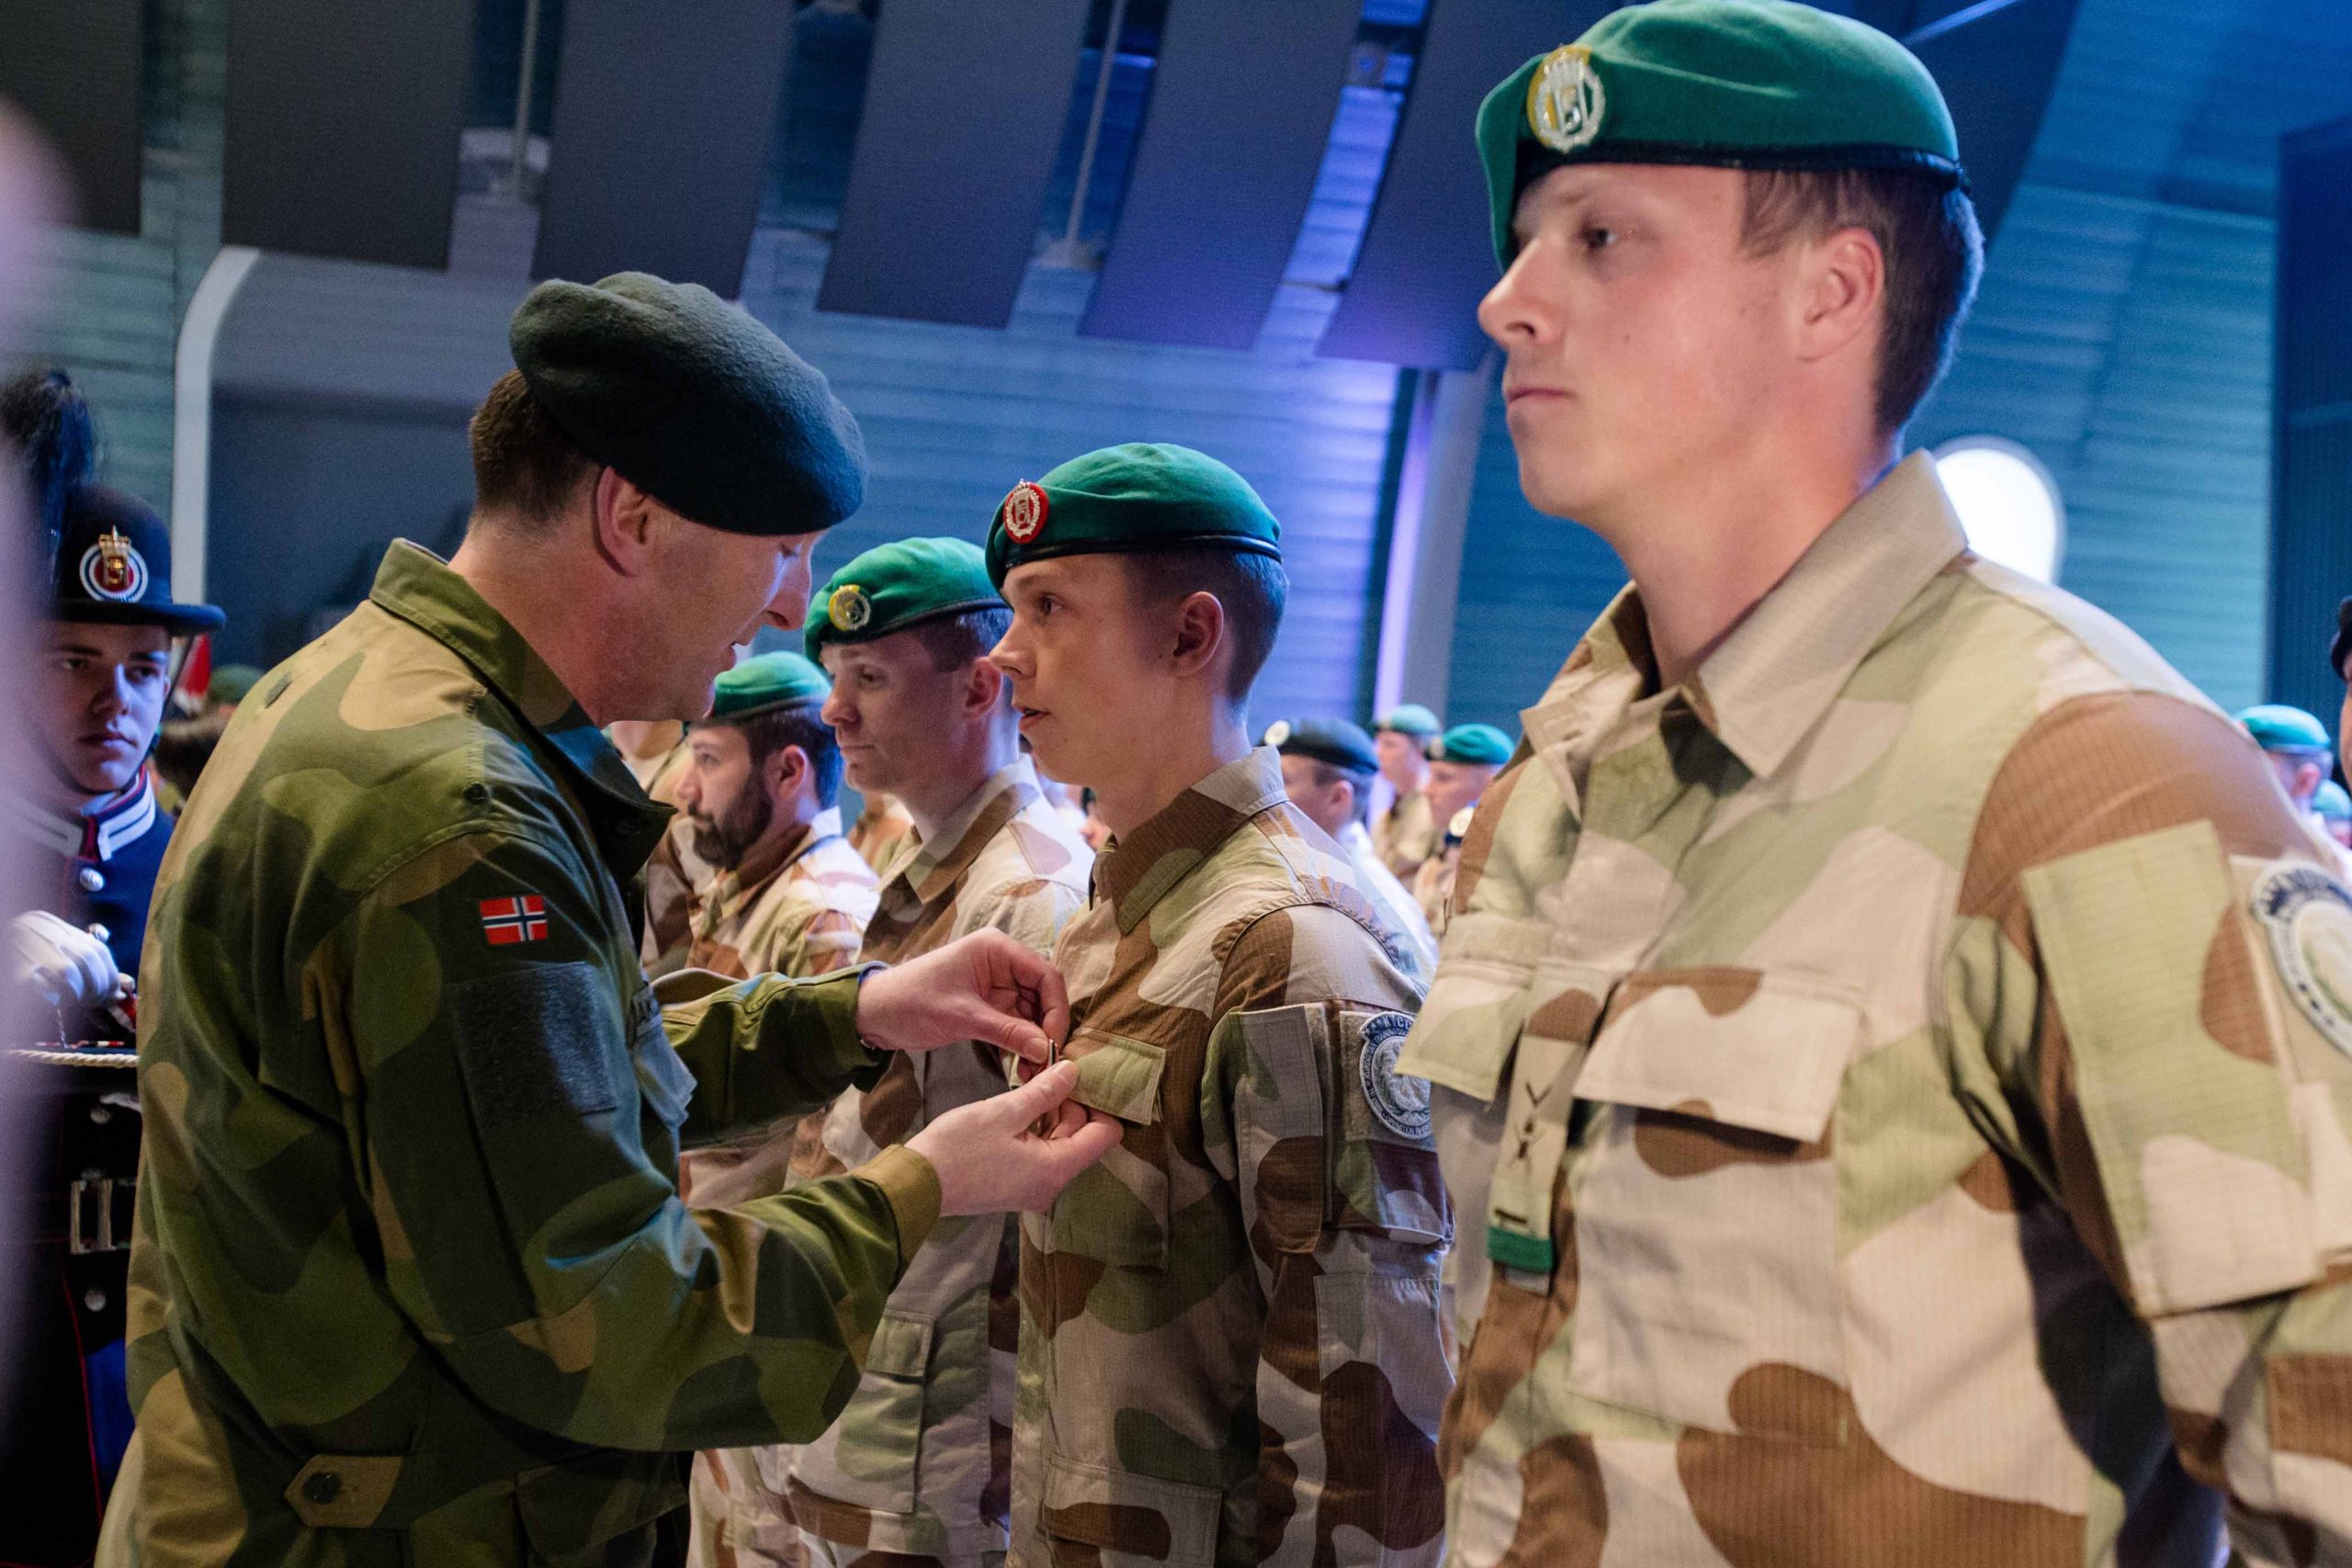 Des soldats irakiens récompensés d'une médaille à leur retour en Norvège - 3